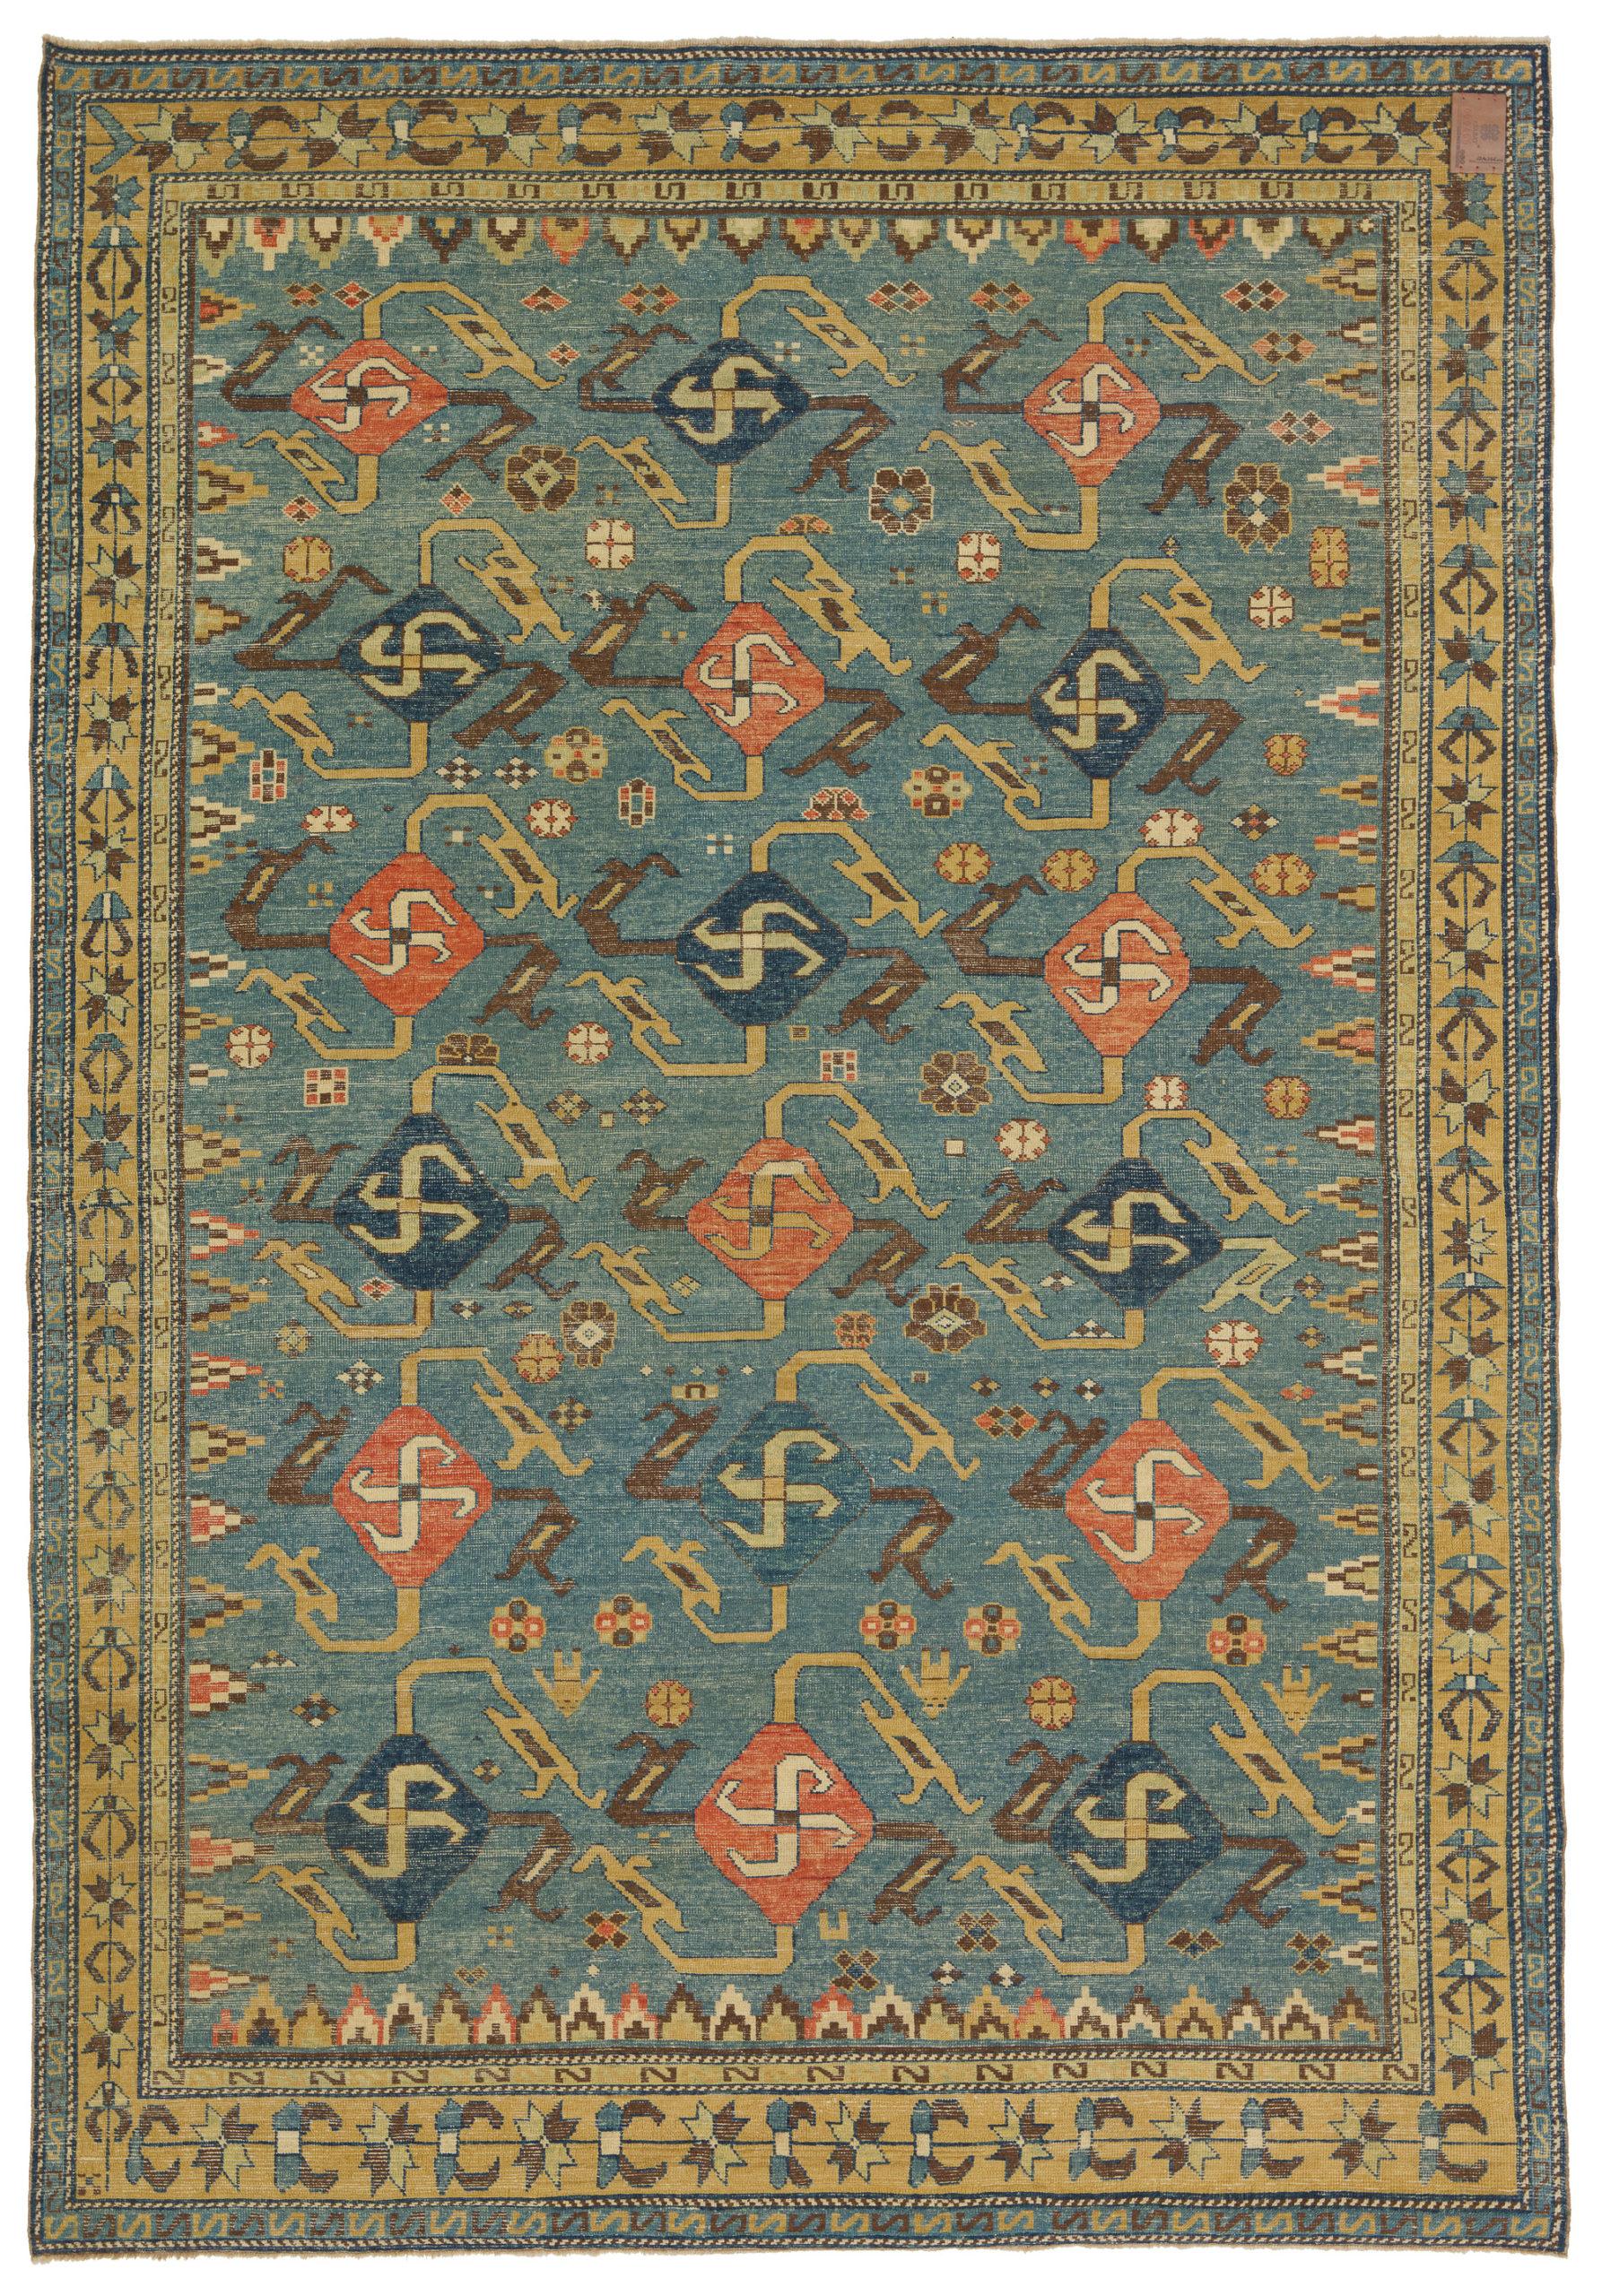 Die Quelle des Teppichs stammt aus dem Buch Orient Star - A Carpet Collection, E. Heinrich Kirchheim, Hali Publications Ltd, 1993 nr.17. Dies ist ein bemerkenswerter und sehr ungewöhnlicher Hakenkreuz-Teppich aus dem frühen 19. Jahrhundert aus dem